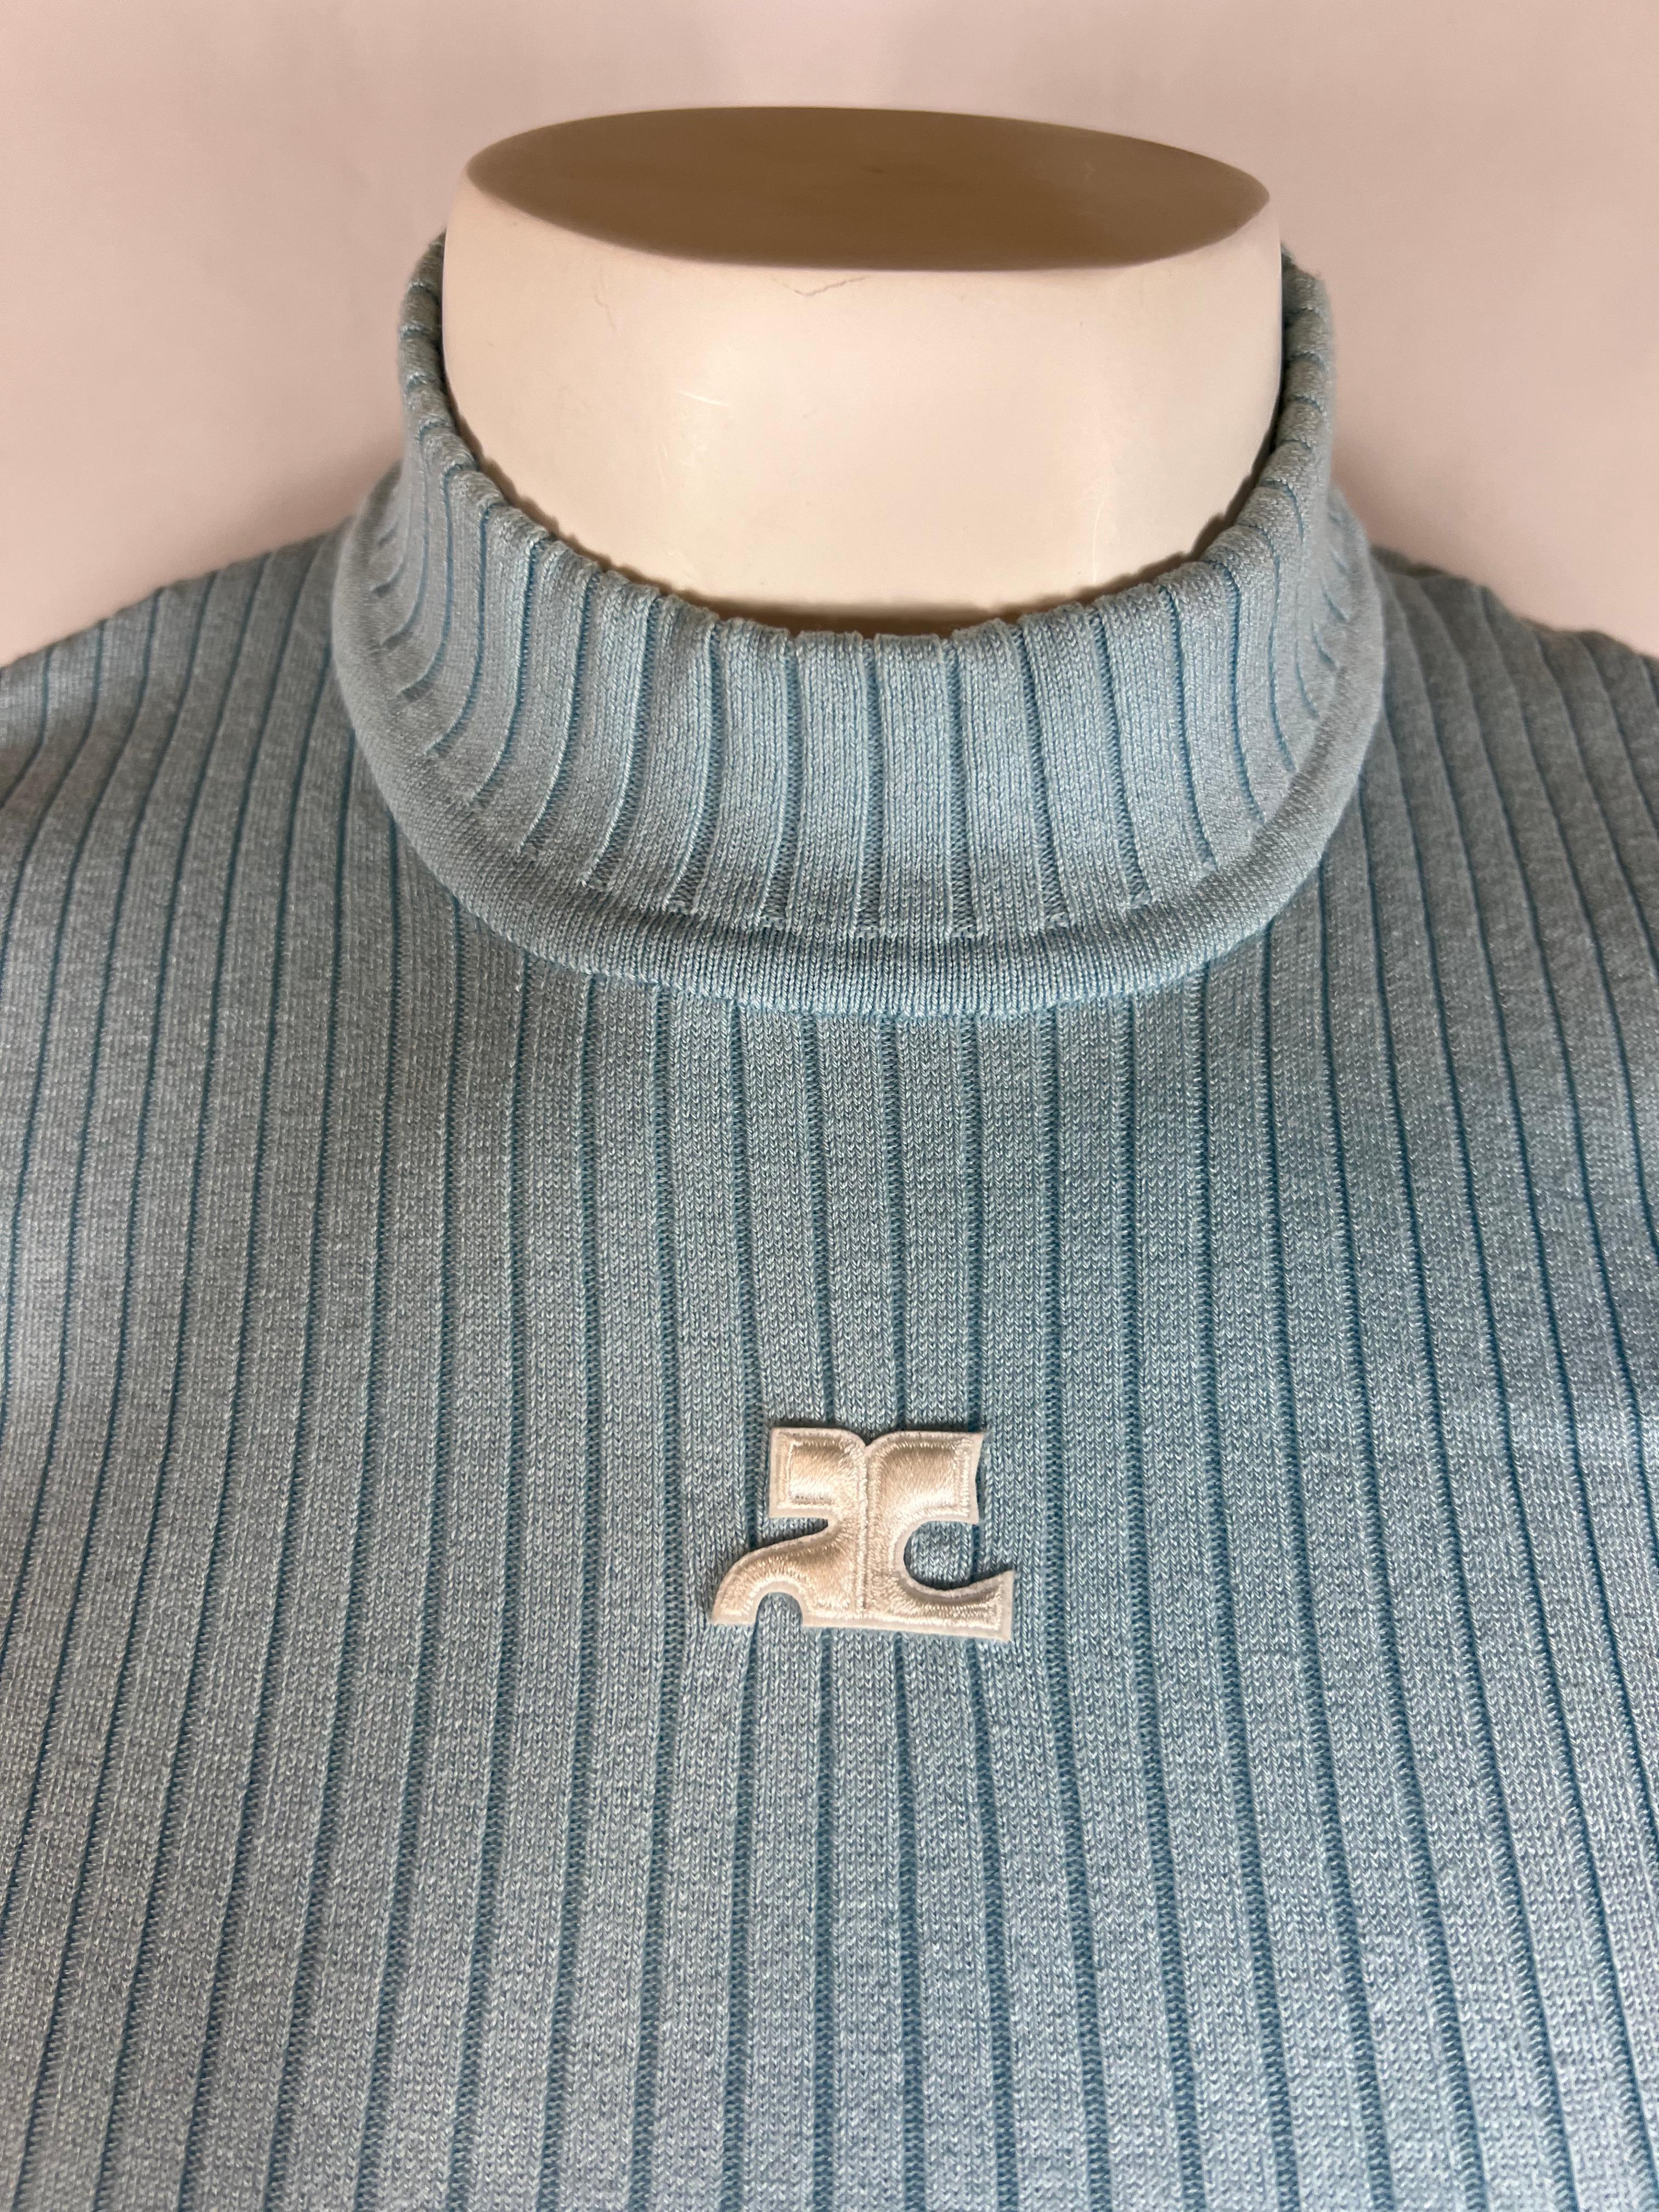 Gray Courreges Paris Light Blue Top, Size 2 For Sale